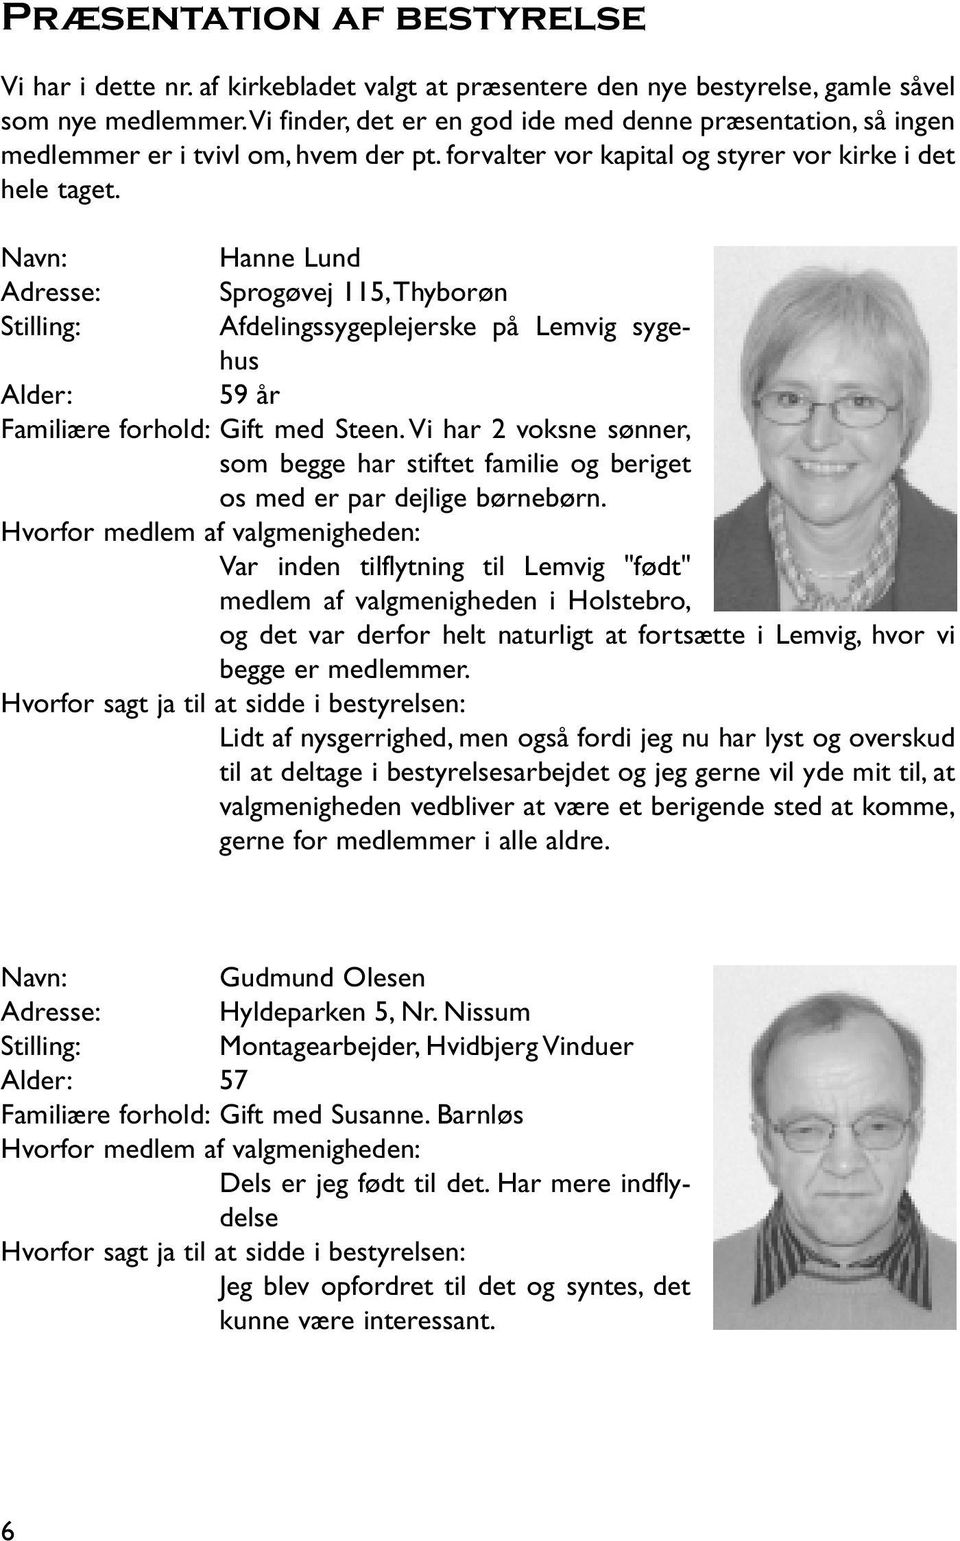 Navn: Hanne Lund Adresse: Sprogøvej 115,Thyborøn Stilling: Afdelingssygeplejerske på Lemvig sygehus Alder: 59 år Familiære forhold: Gift med Steen.